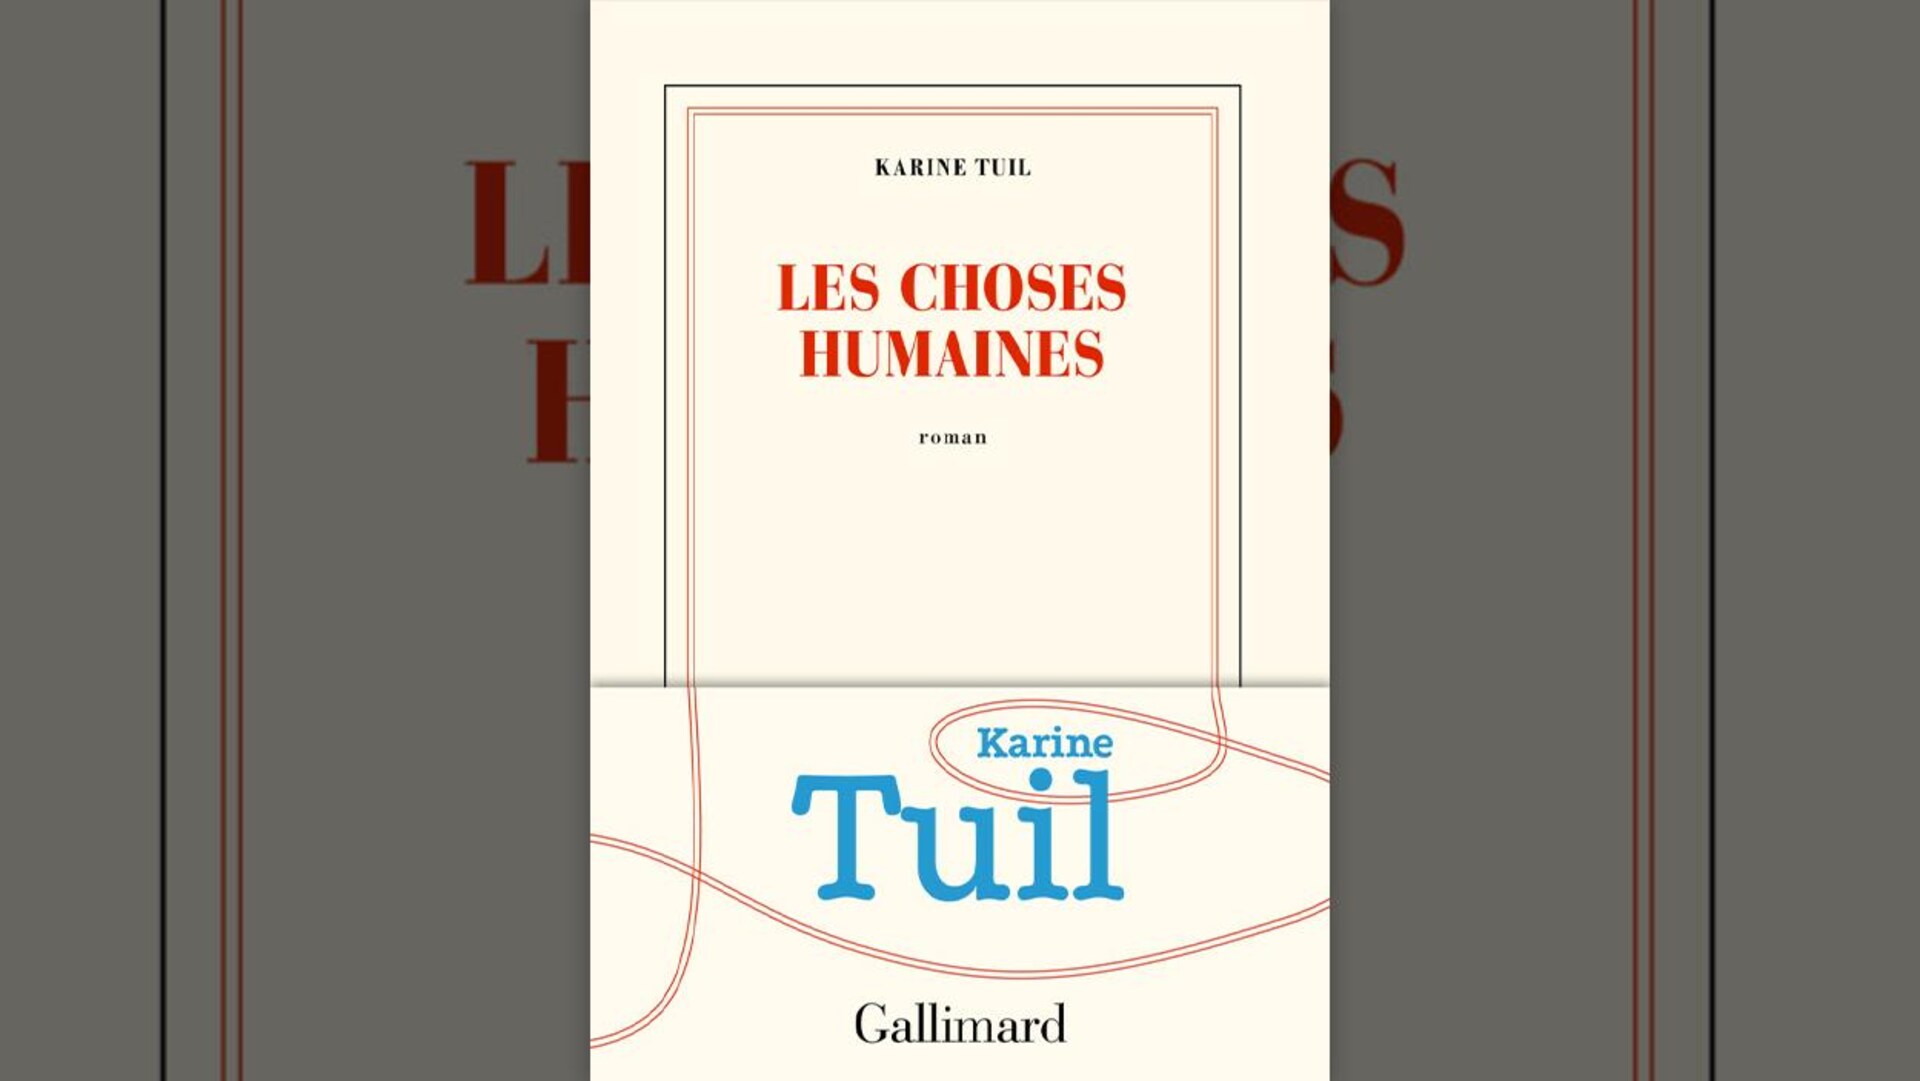 La couverture classique Gallimard (fond écru, liseré rouge) est légèrement revisitée : en bas, le liseré rouge se déforme en ruban et vient entourer le nom de l'autrice. 